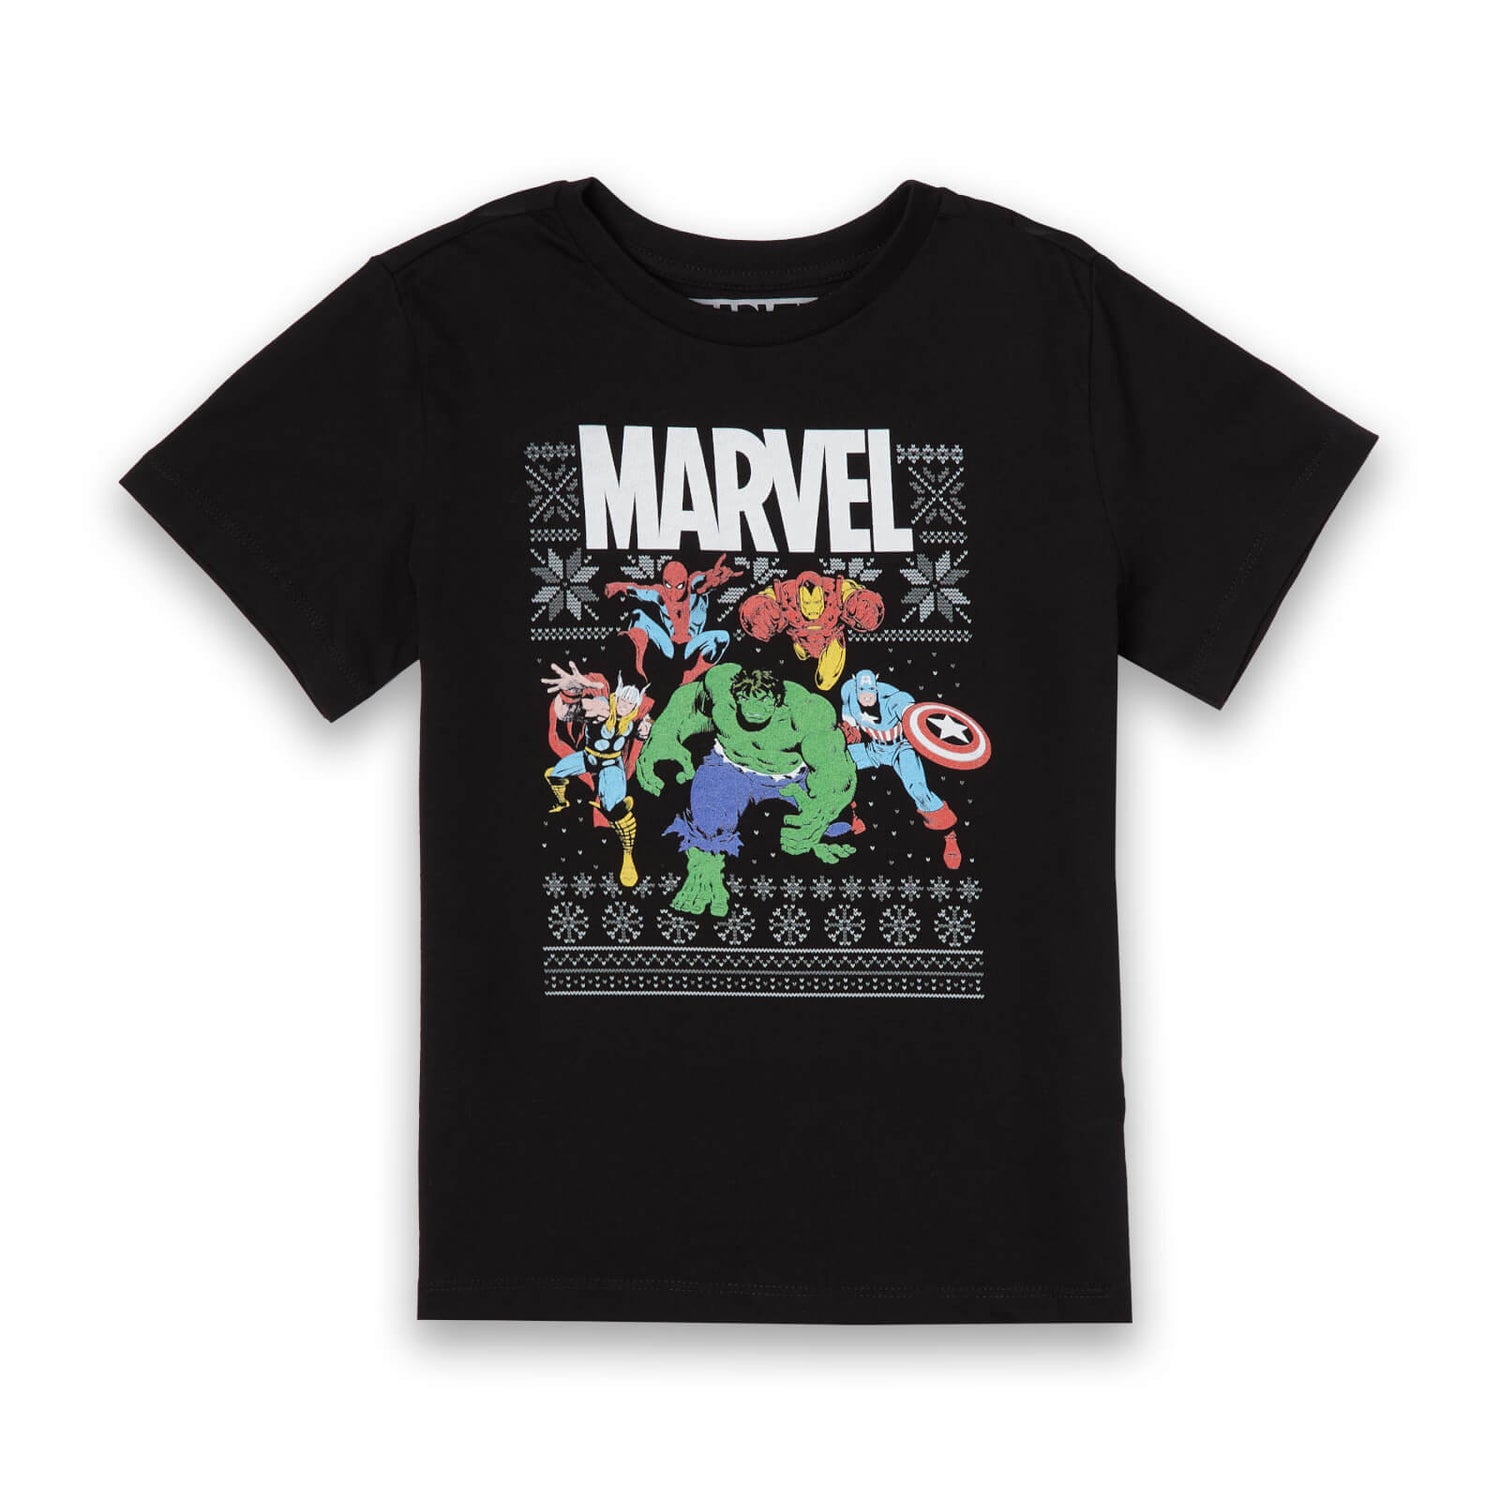 Marvel Avengers Group Kids Christmas T-Shirt - Black